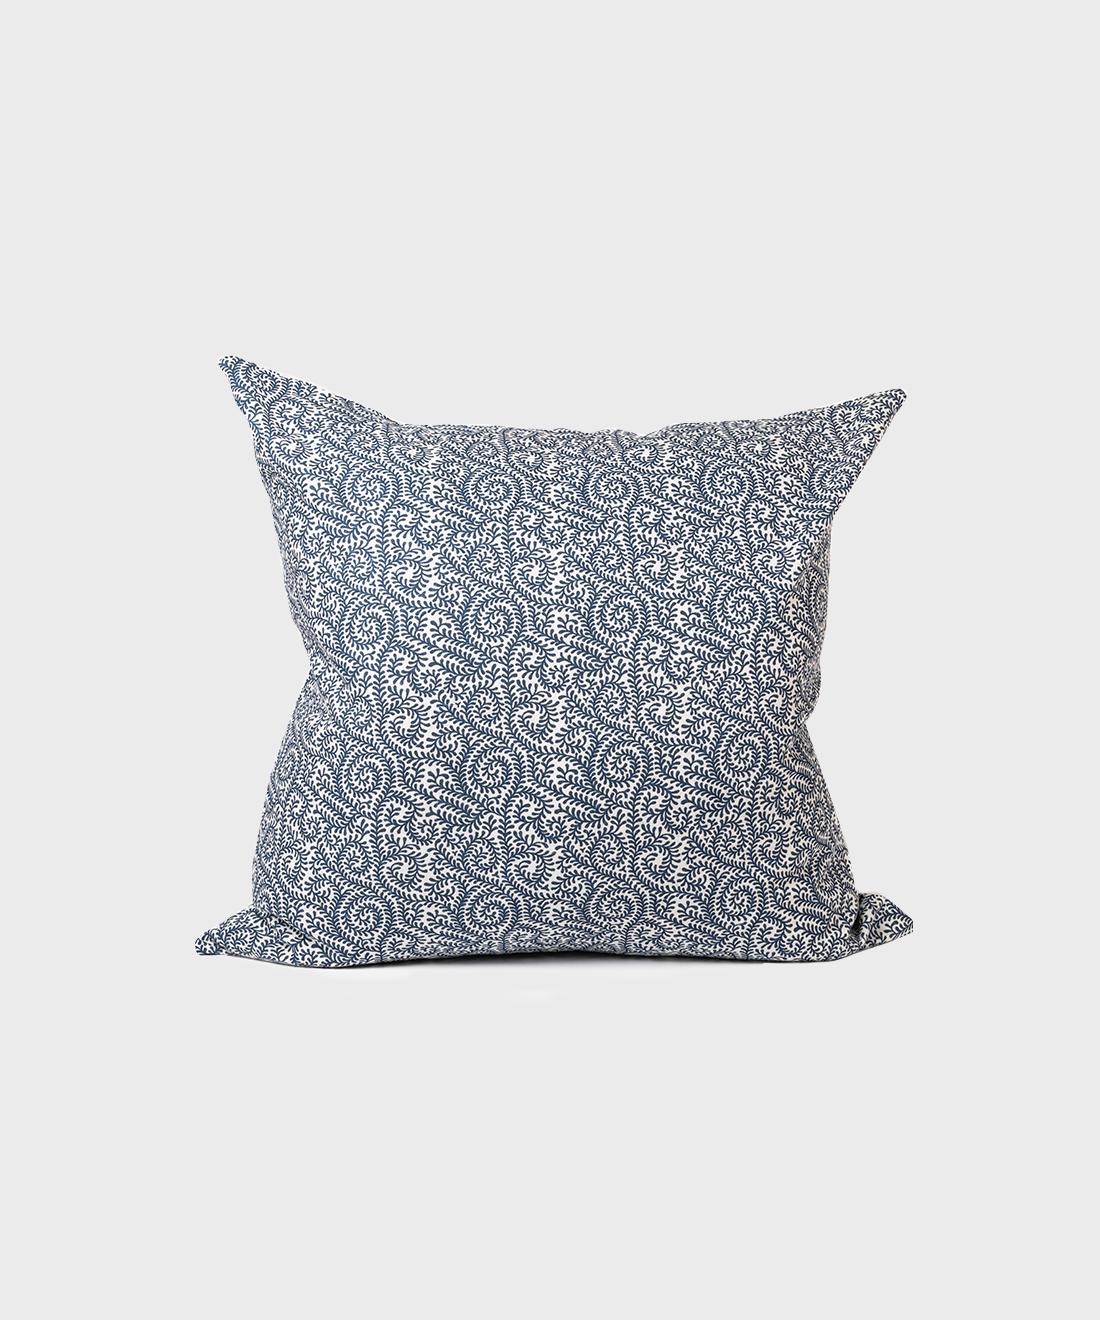 Vendure Scatter Cushion in Indigo (Slub Cotton)